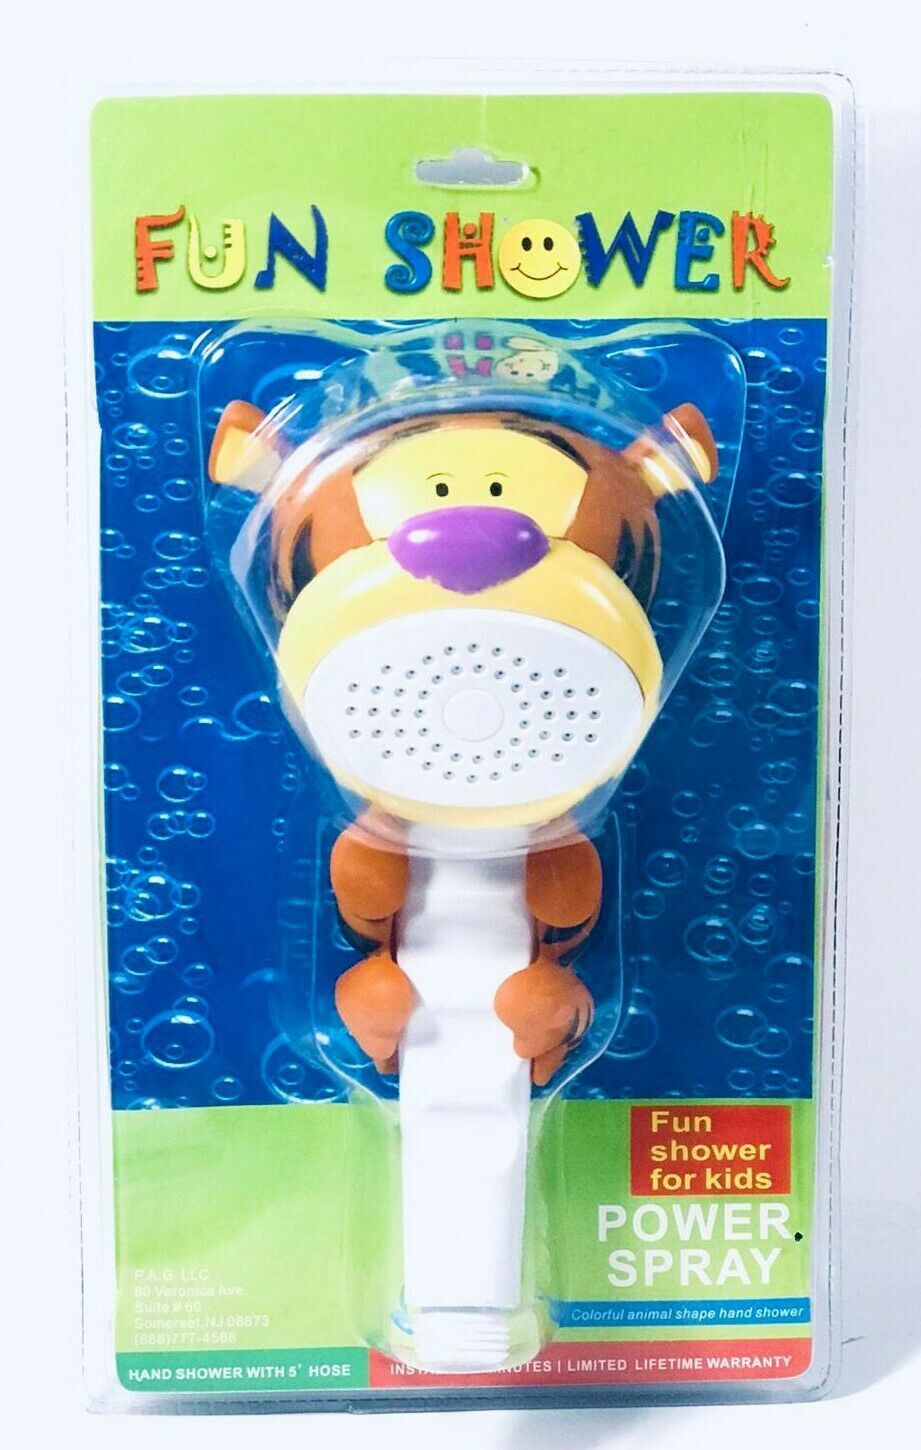 Fun shower power spray for kids-tiger orange